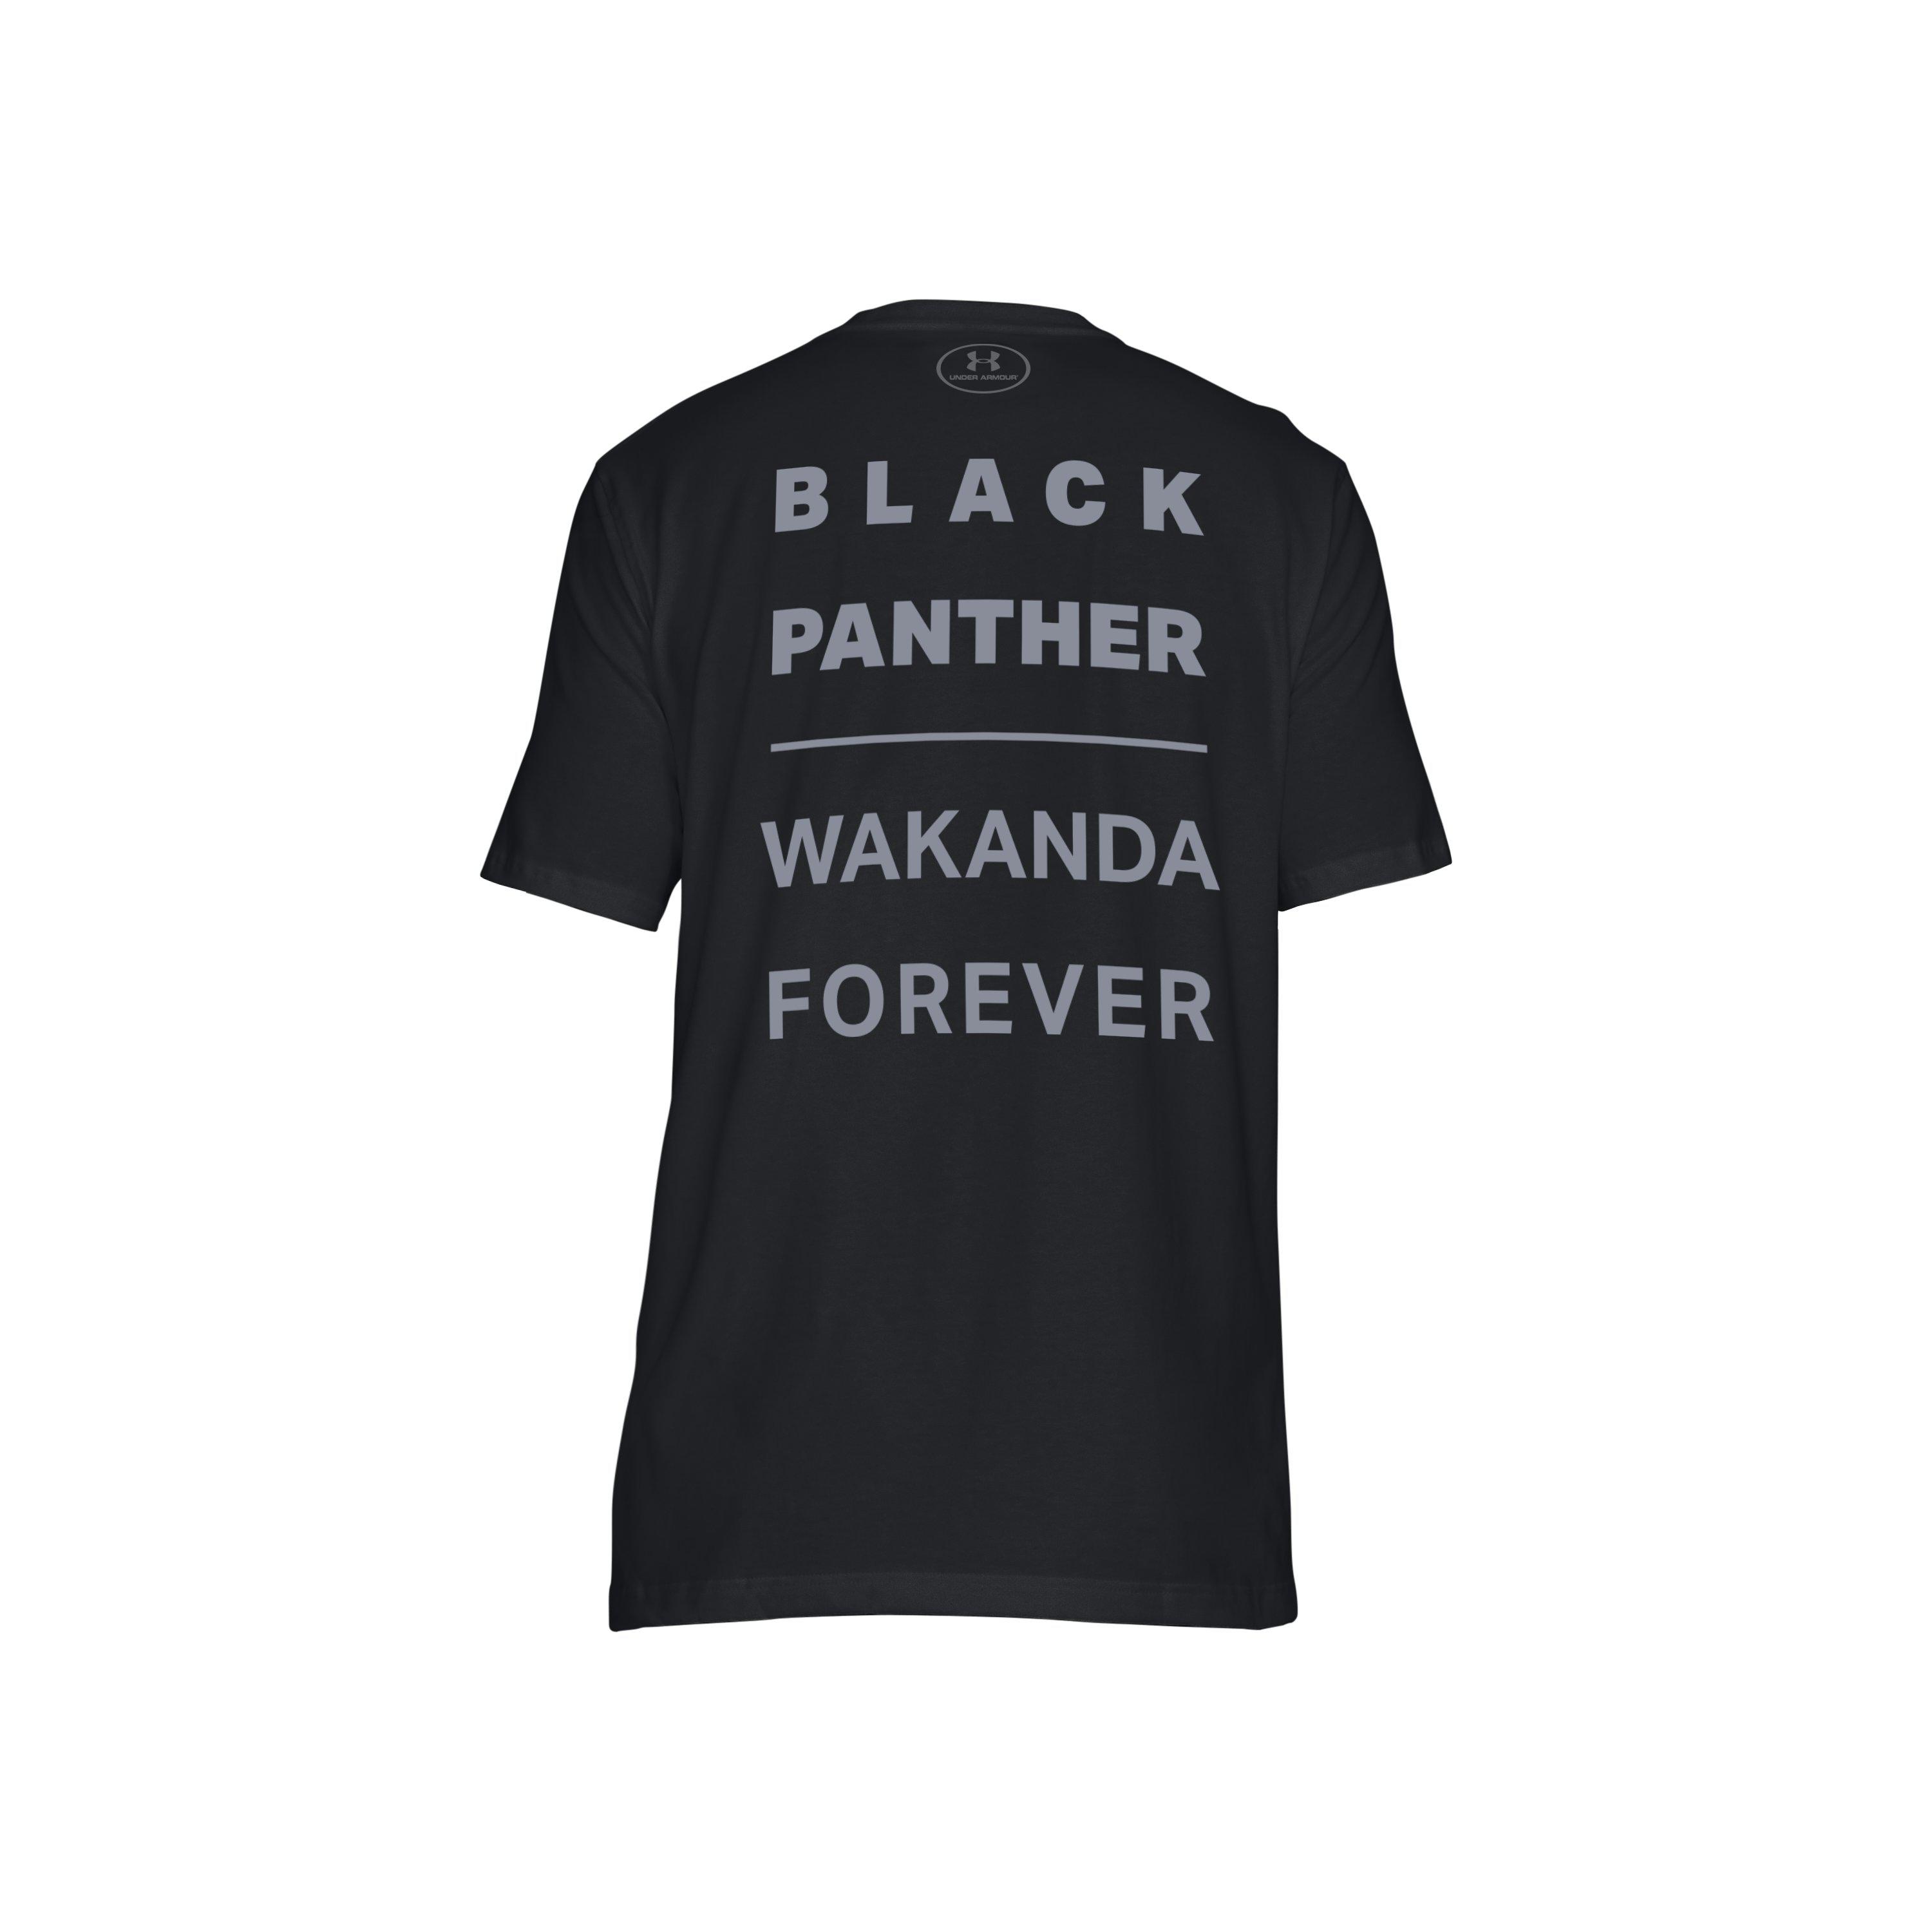 under armour black panther shirt